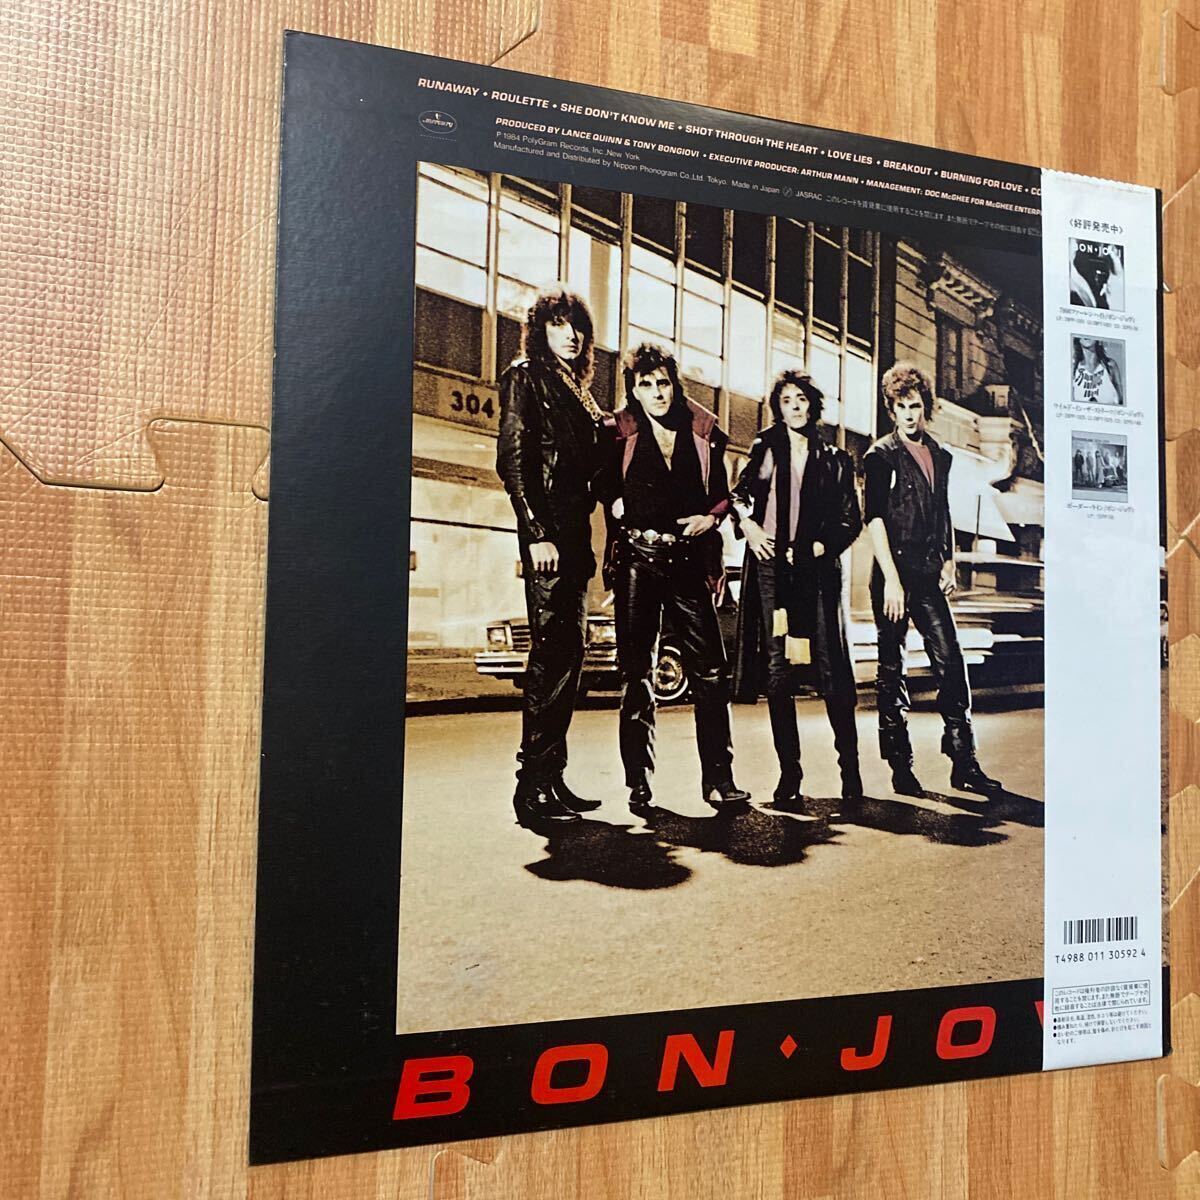 Bon Jovi ボン・ジョヴィ夜明けのランナウェイ RUNAWAY レコード LP 帯付き OBI 25PP-119_画像4